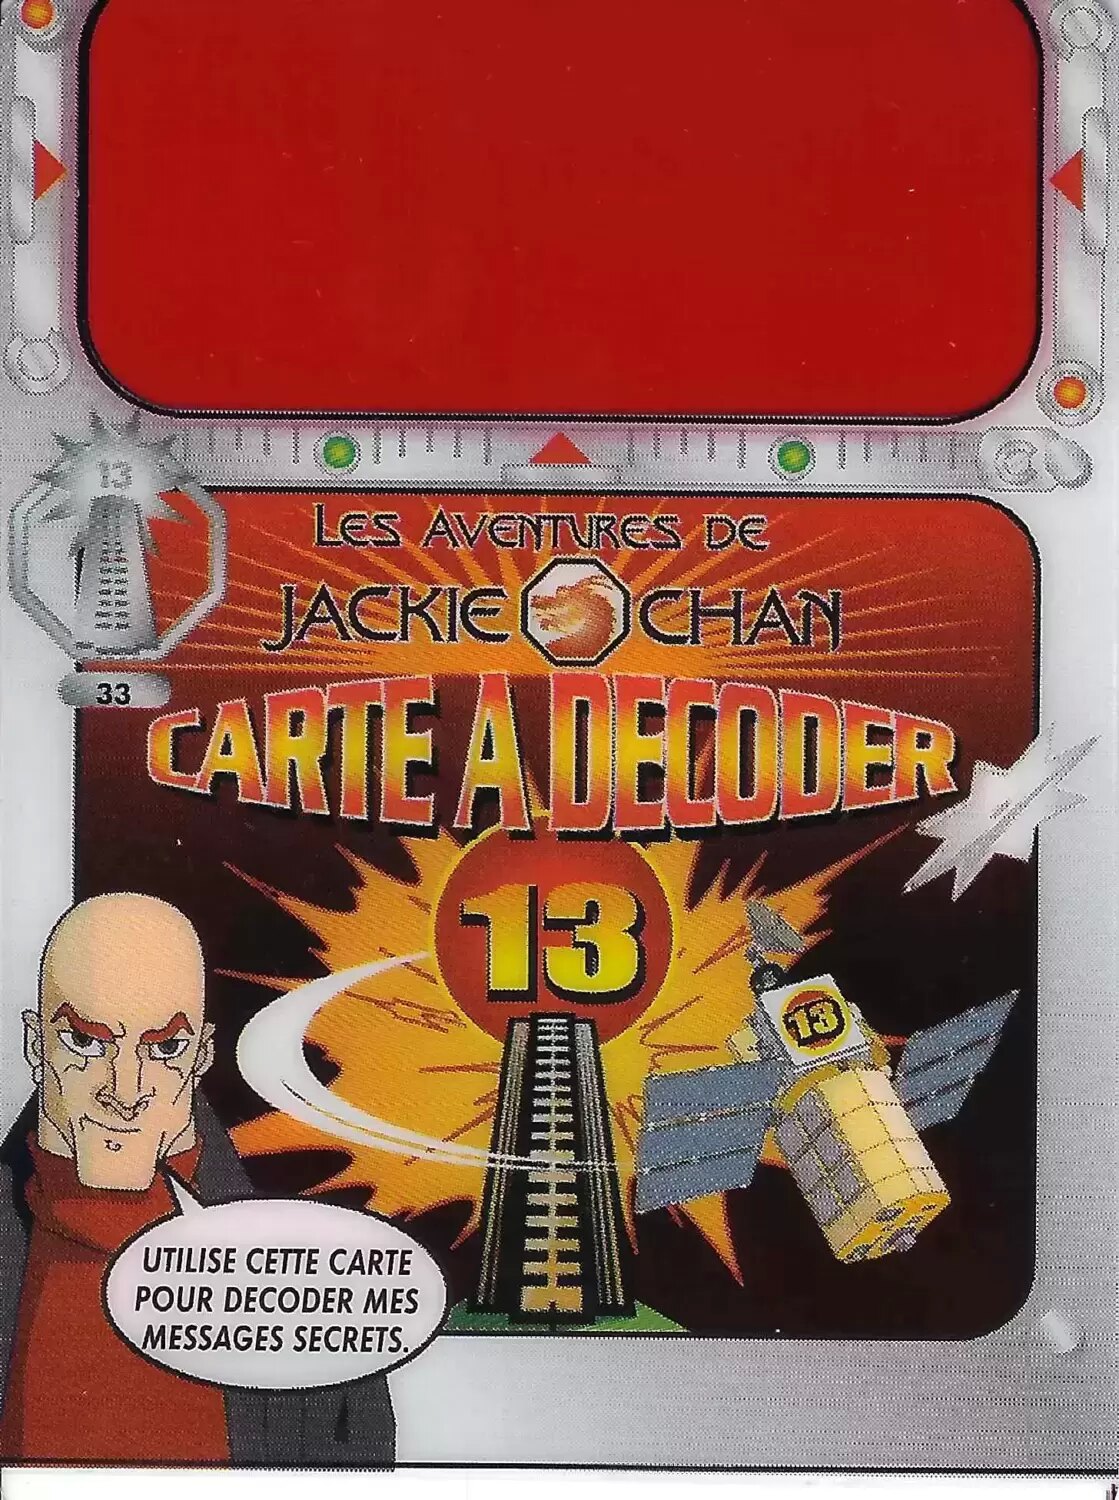 Les Aventures de Jackie Chan - Les Aventure de Jackie Chan - Carte a Décoder 13